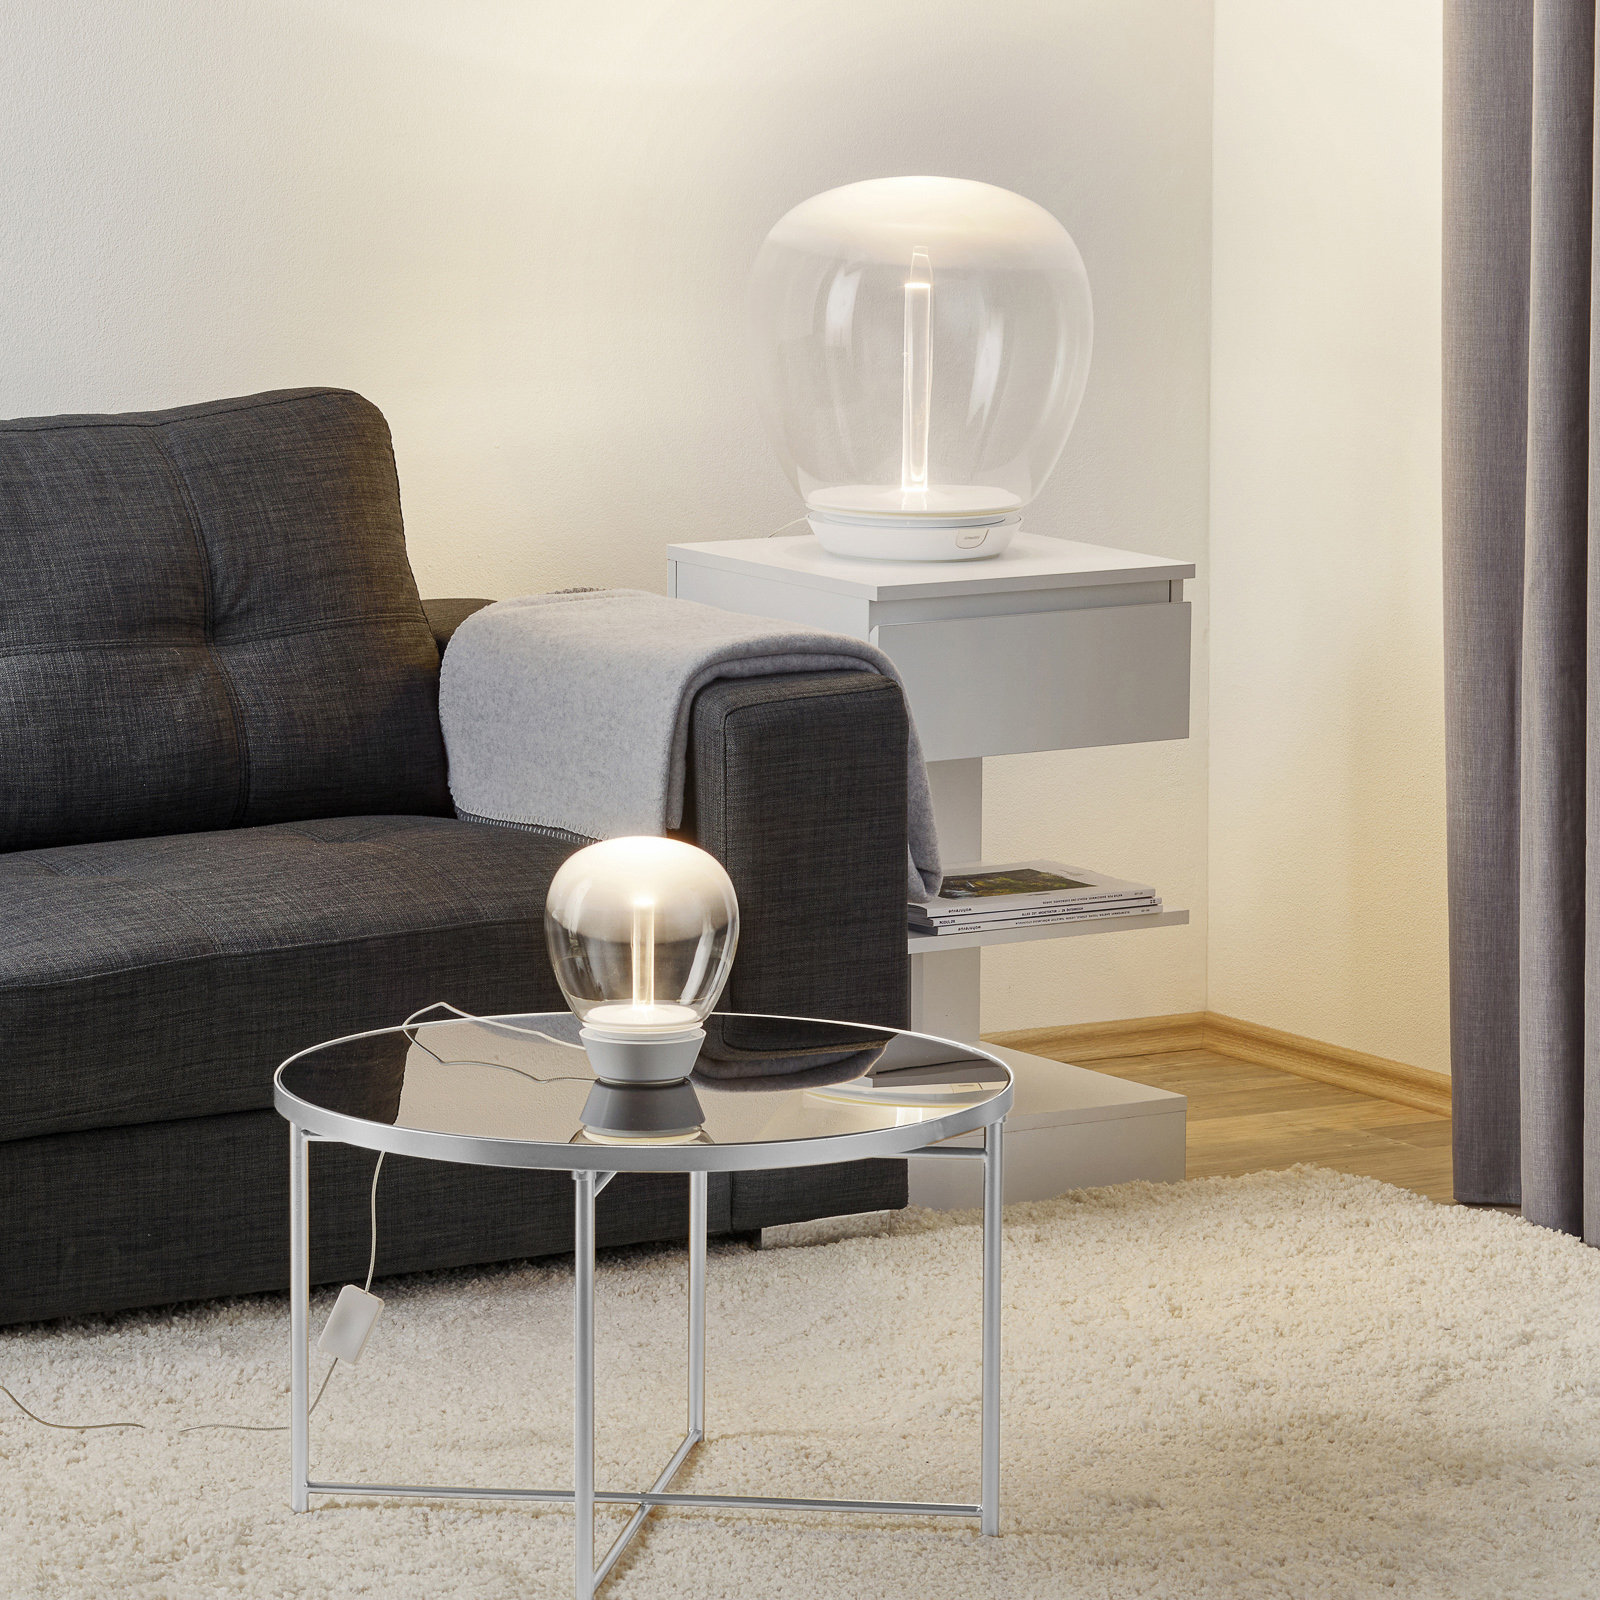 Artemide Empatia designová stolní lampa LED, 16 cm